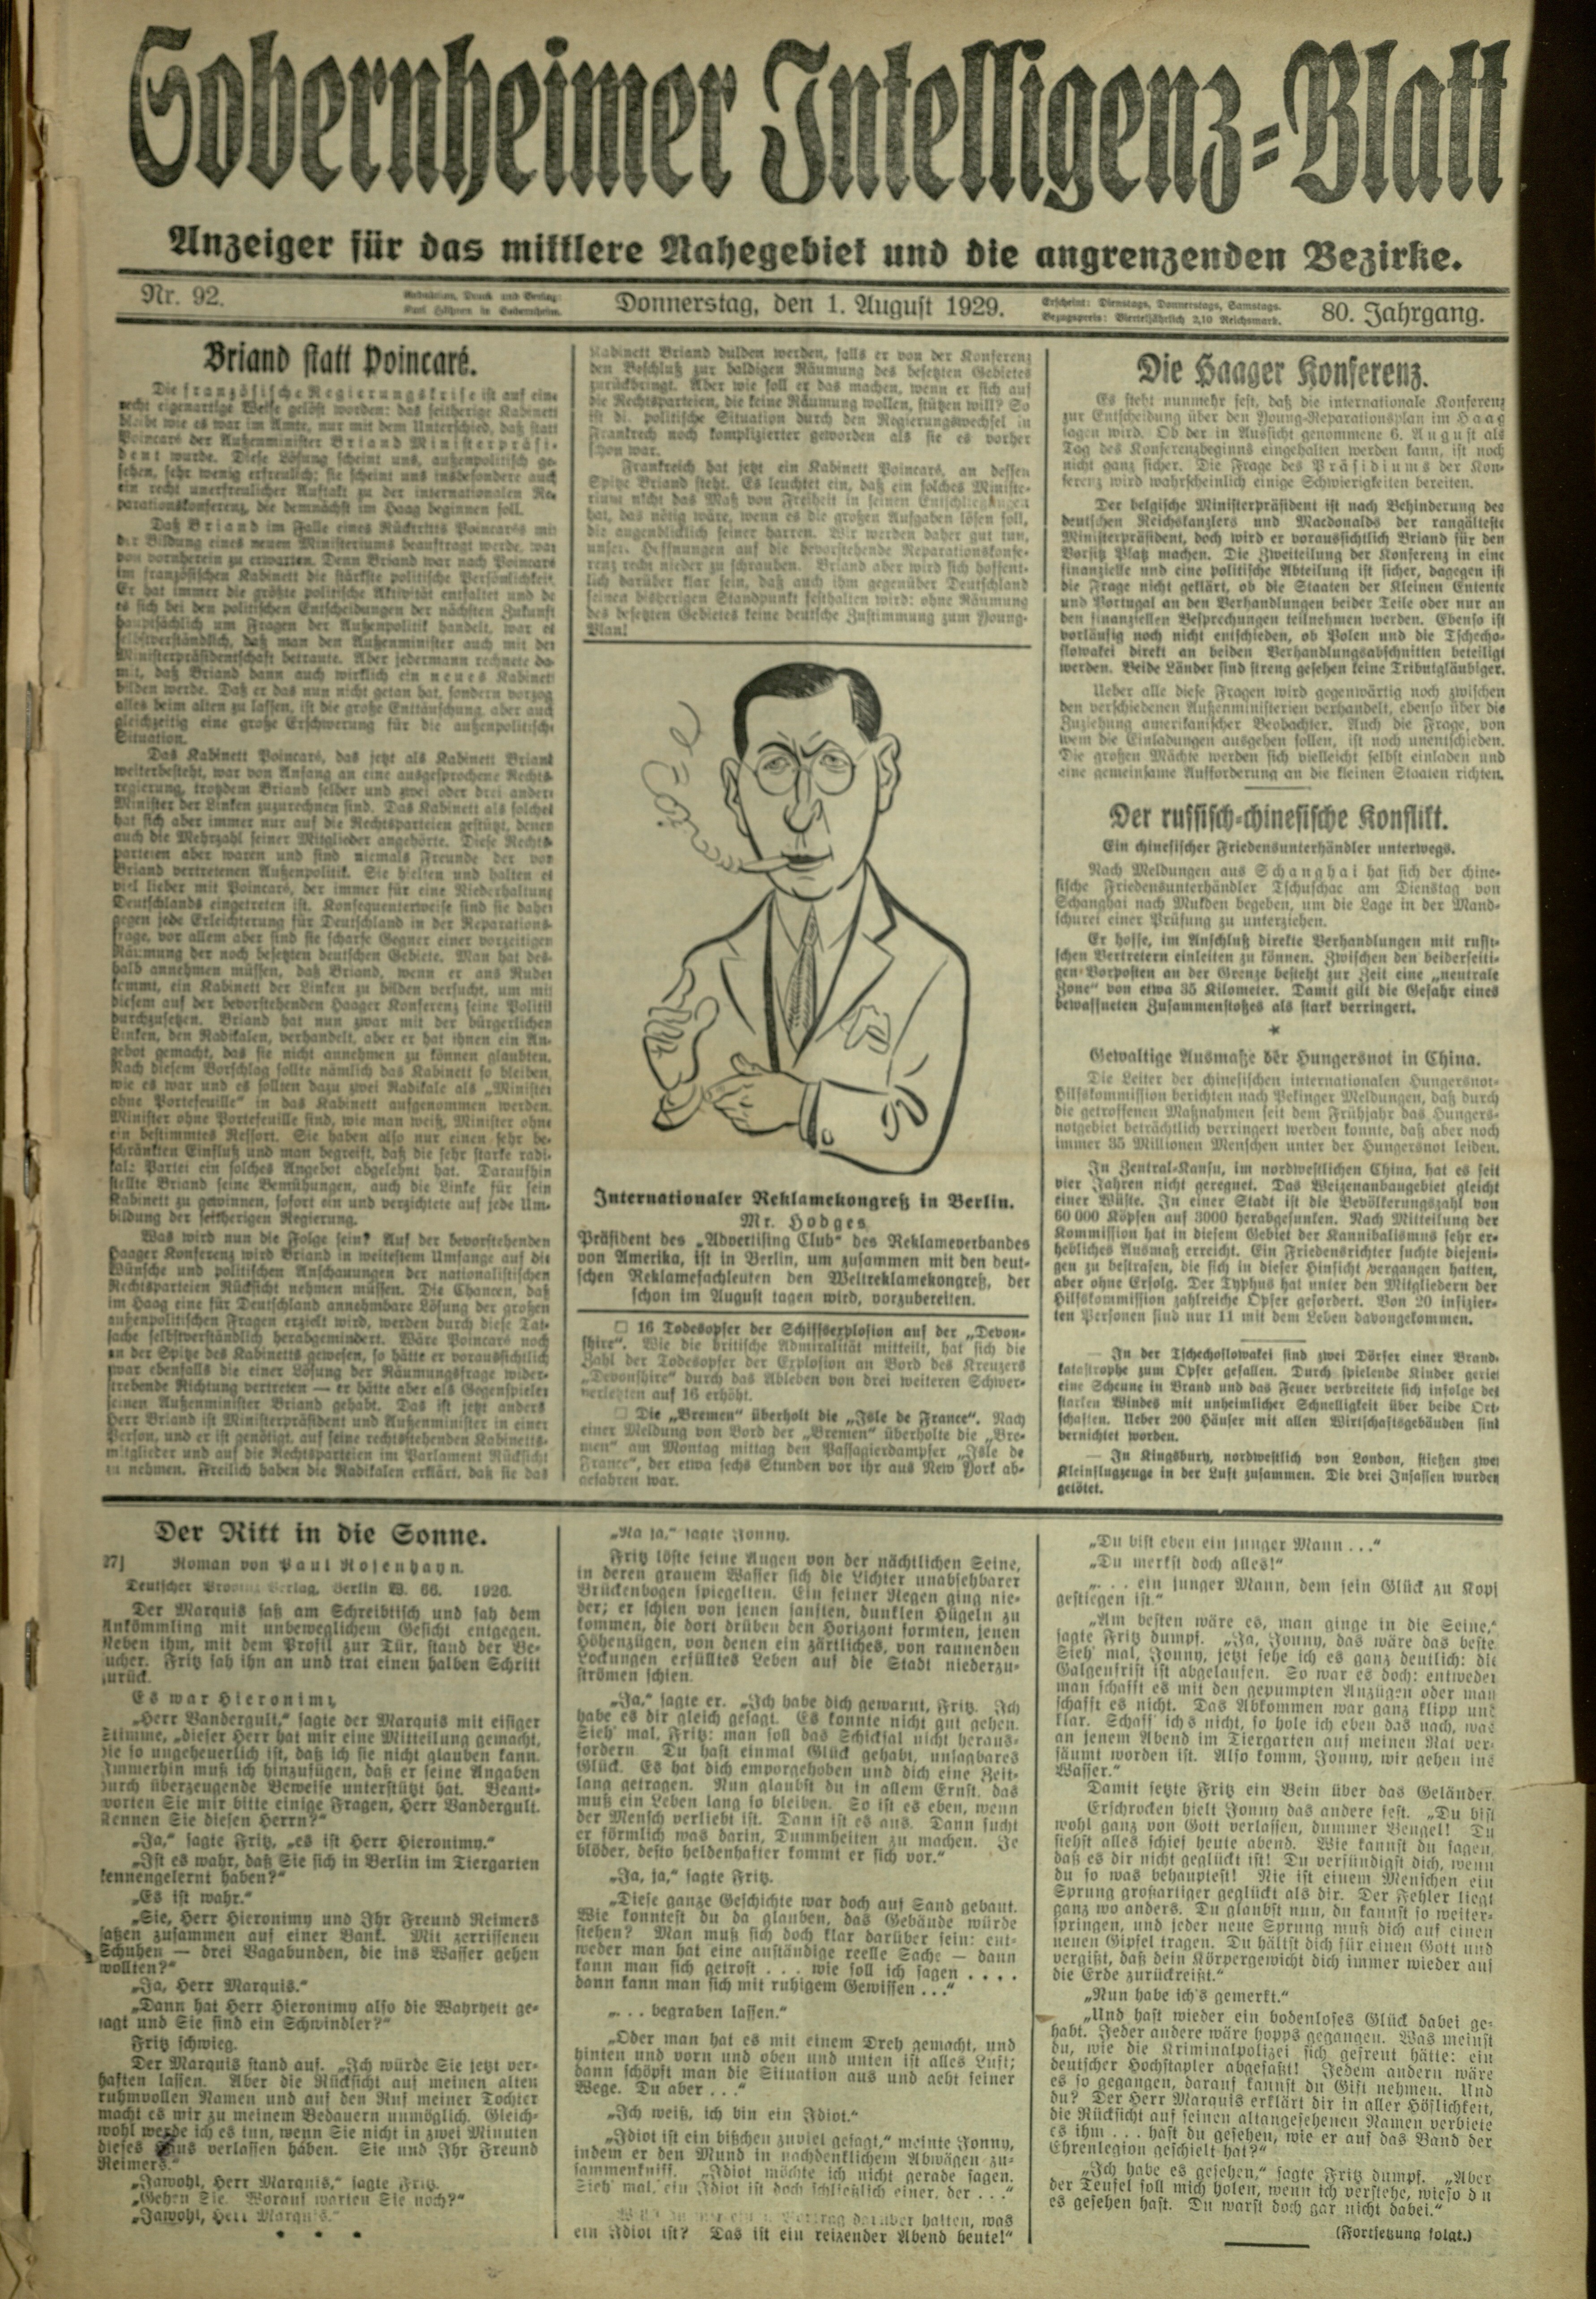 Zeitung: Sobernheimer Intelligenzblatt; August 1929, Jg. 80 Nr. 92 (Heimatmuseum Bad Sobernheim CC BY-NC-SA)